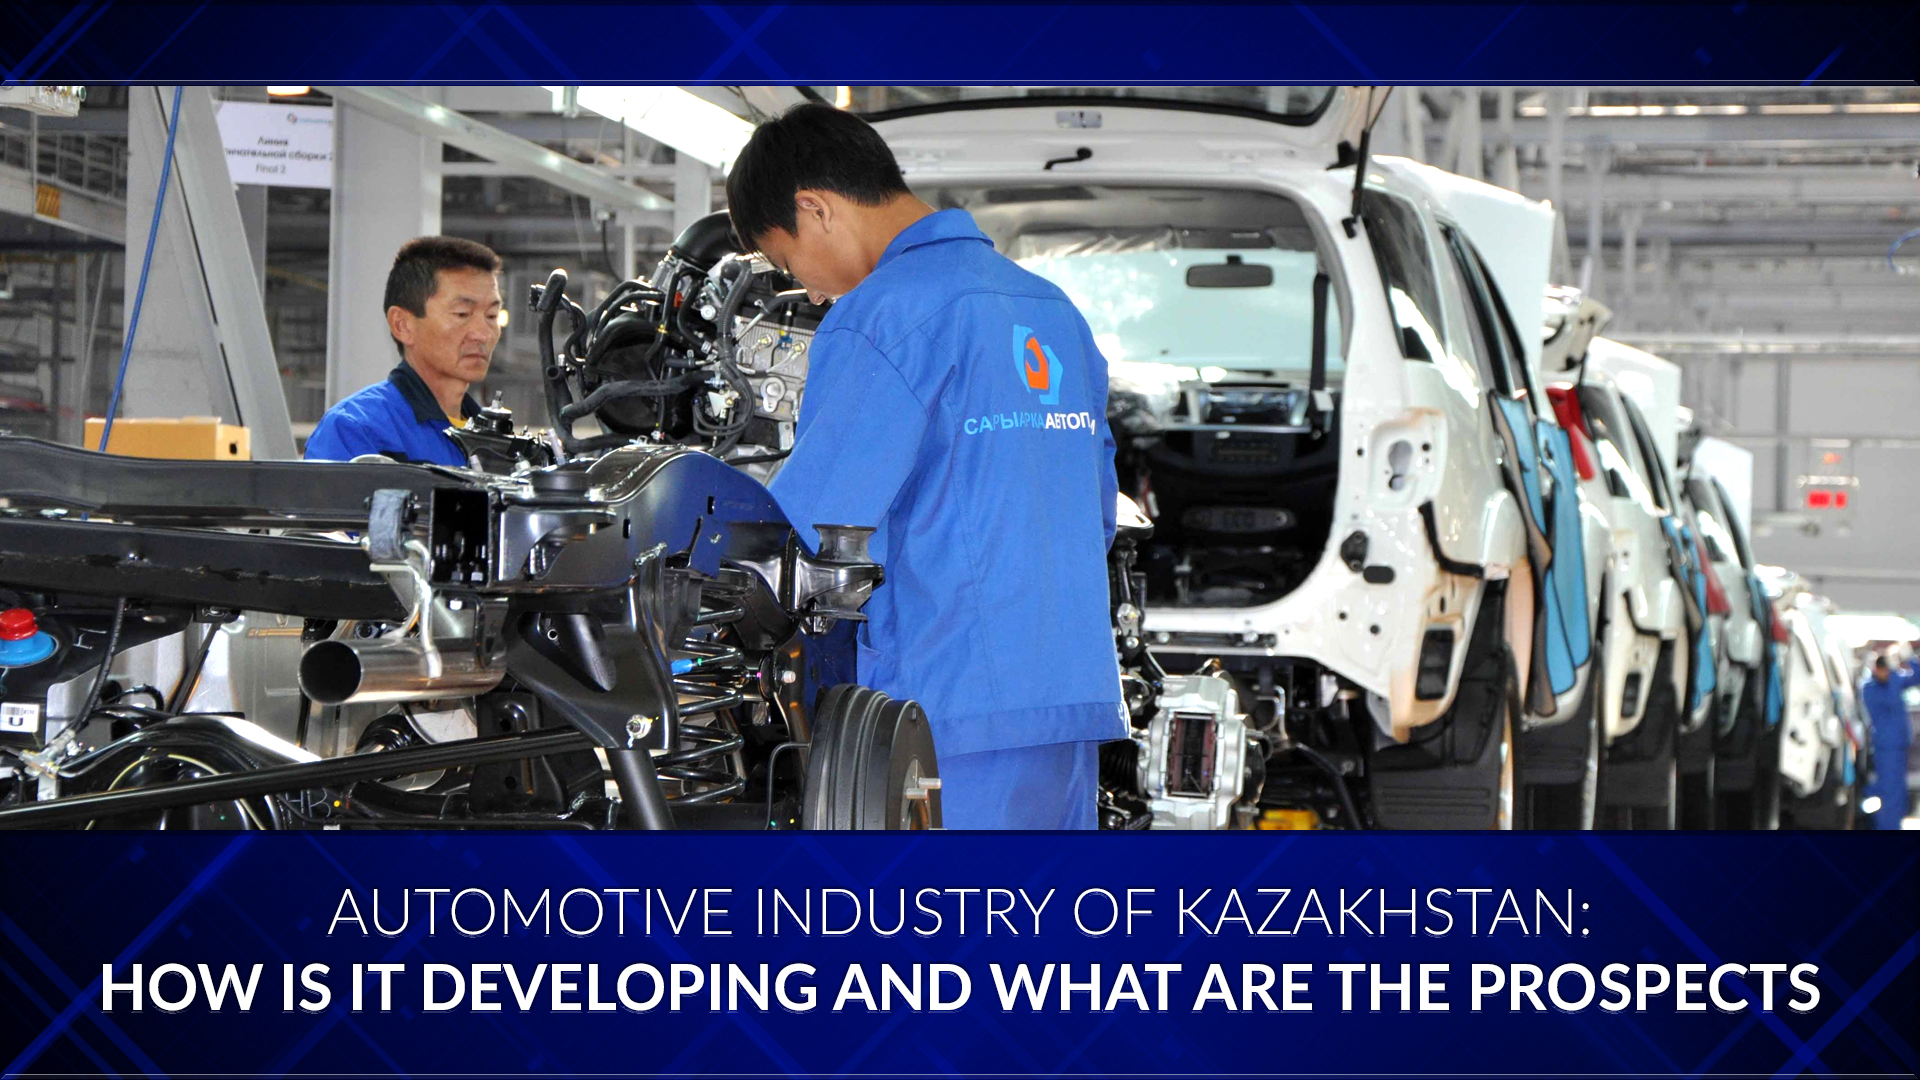 Govt on development of automotive industry in Kazakhstan